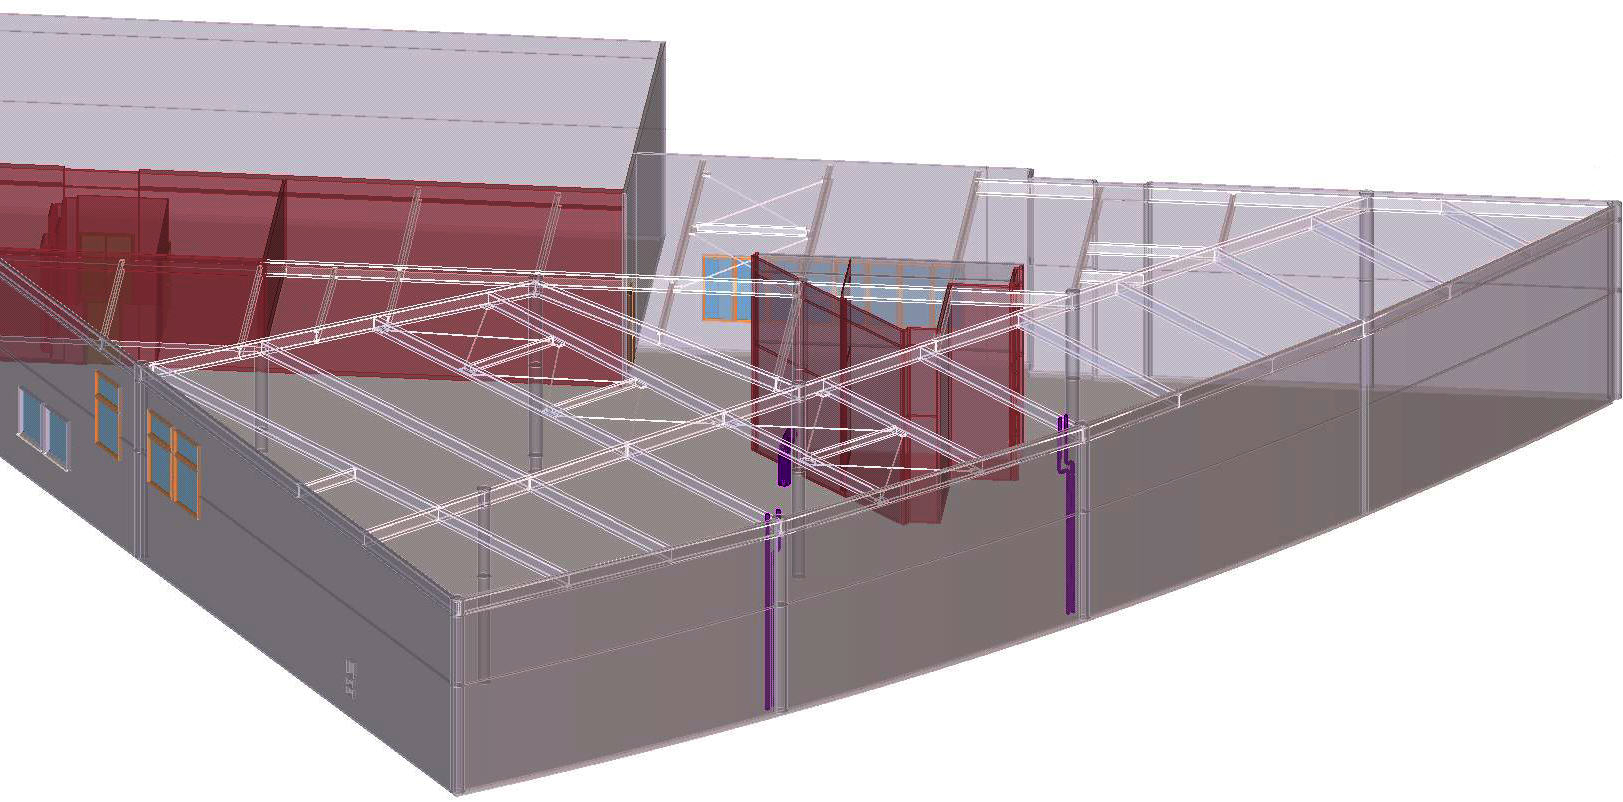 Inwentaryzacja budynku i inwentaryzacja konstrukcji za pomocą skanowania laserowego.